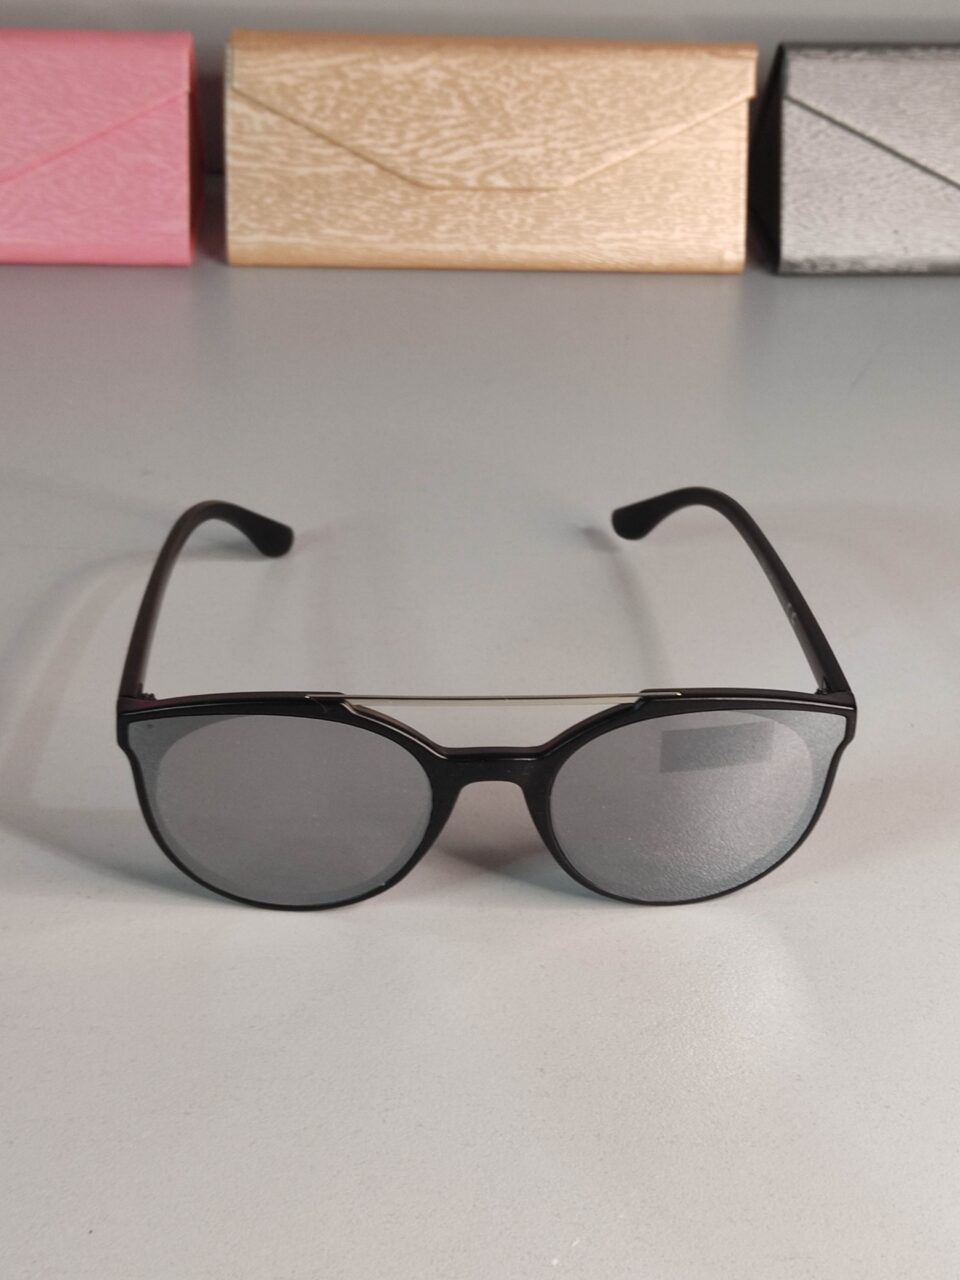 Occhiali da sole in offerta neri a specchio con ponte metallico e lenti a gatto modello ml 8815